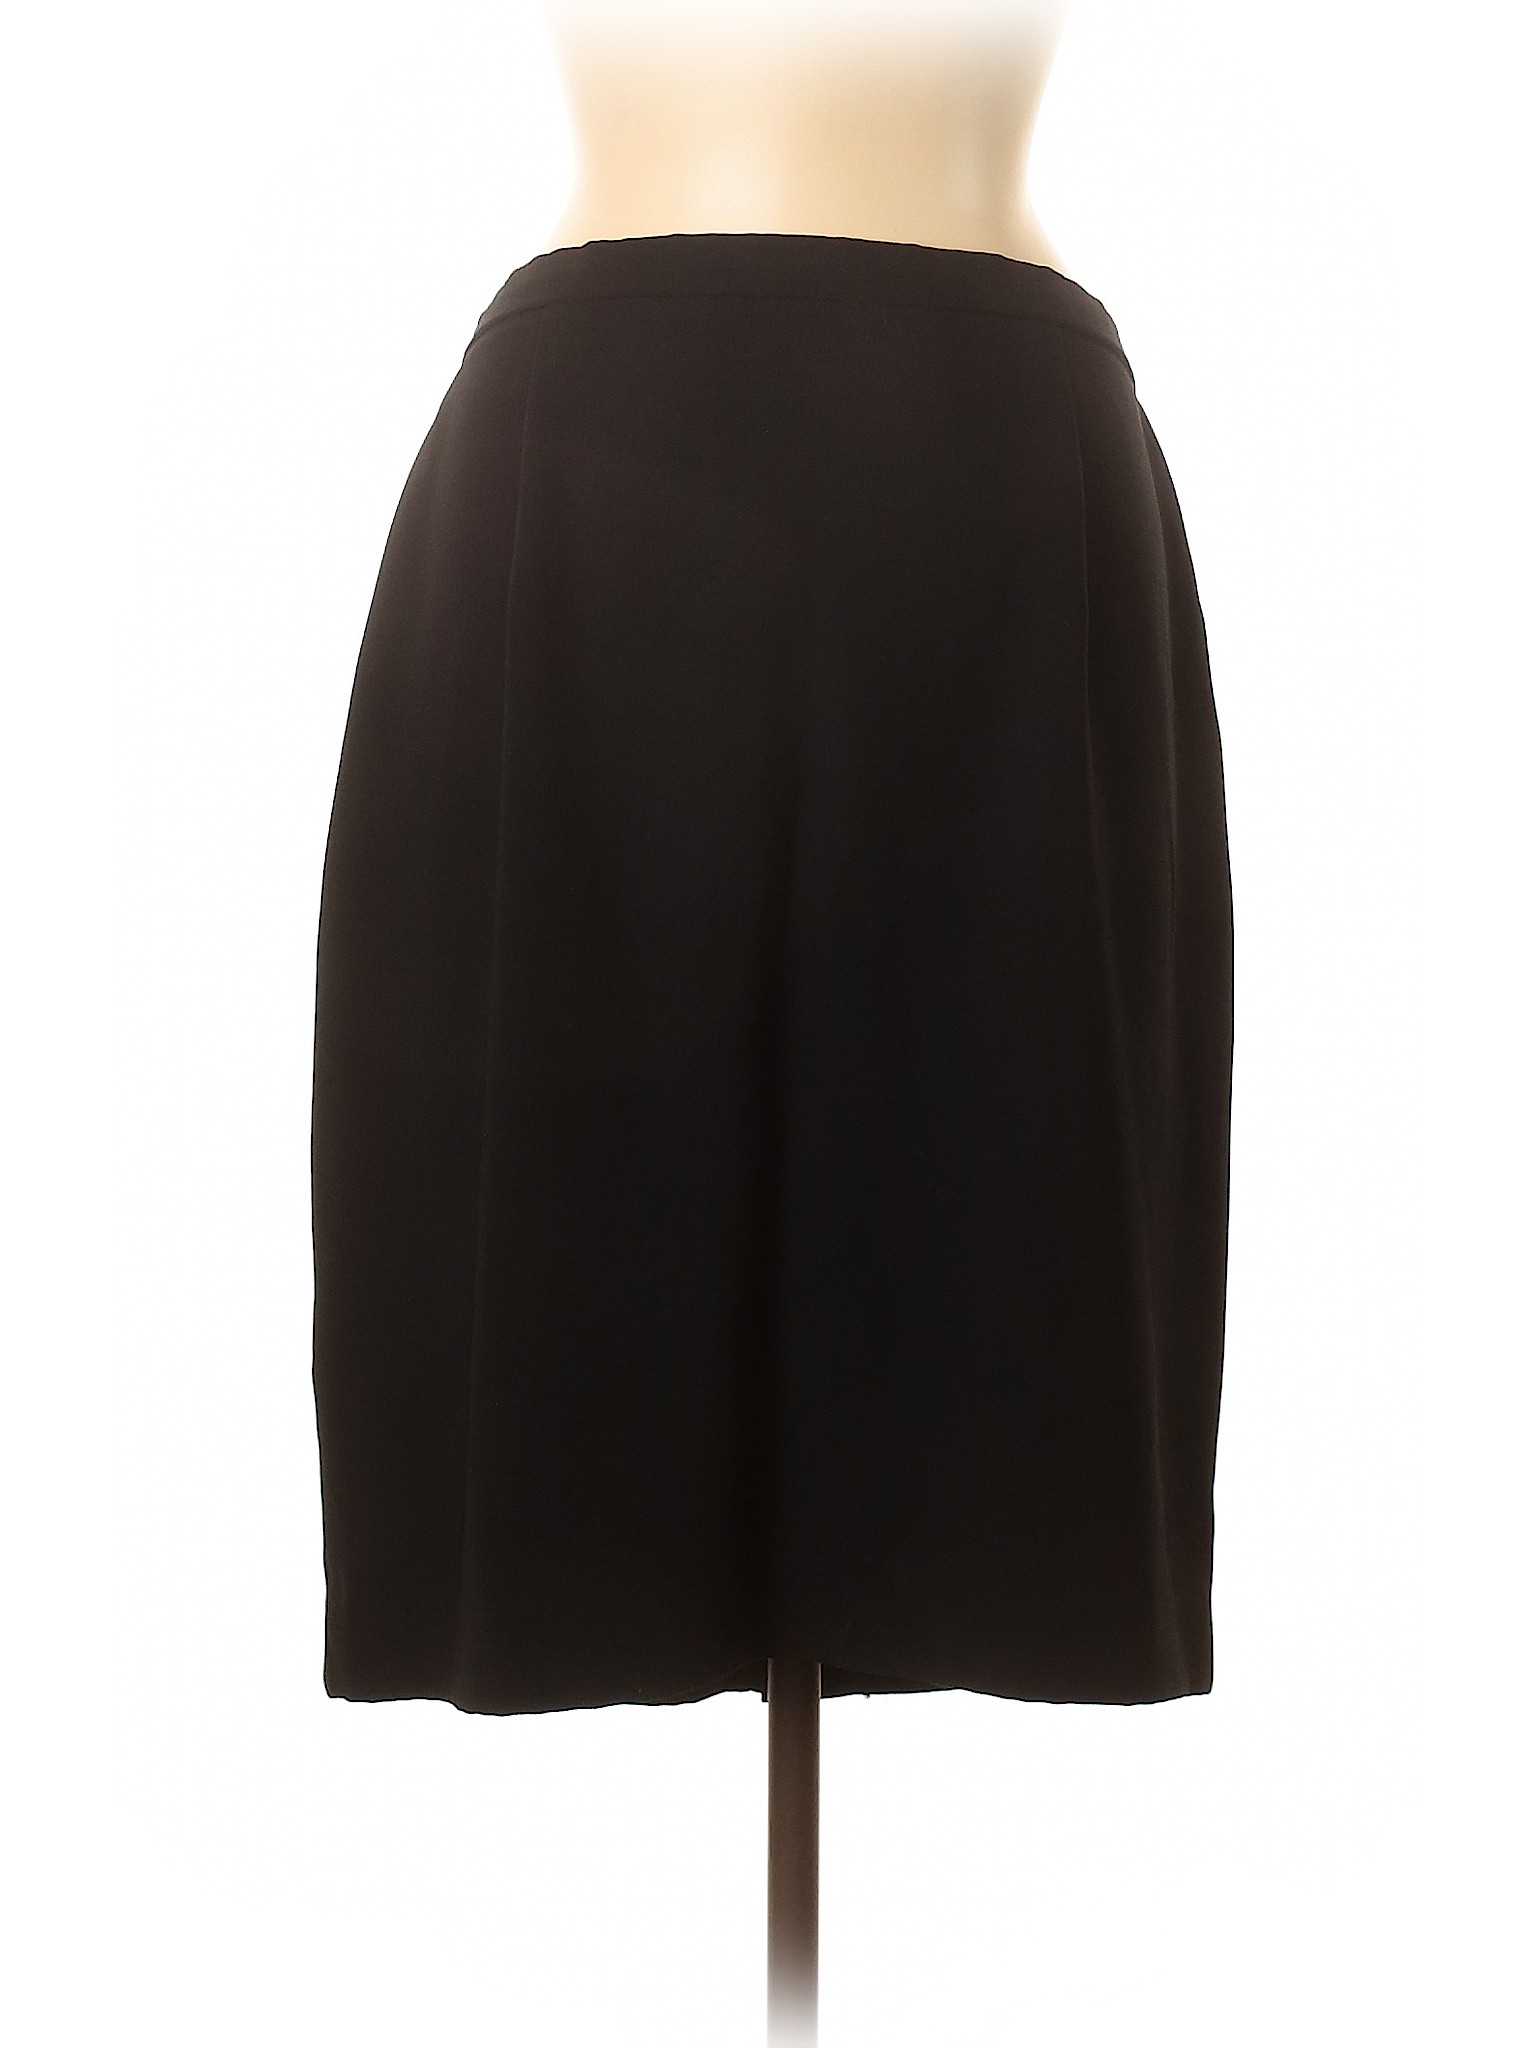 Unbranded Women Black Casual Skirt 16 Ebay